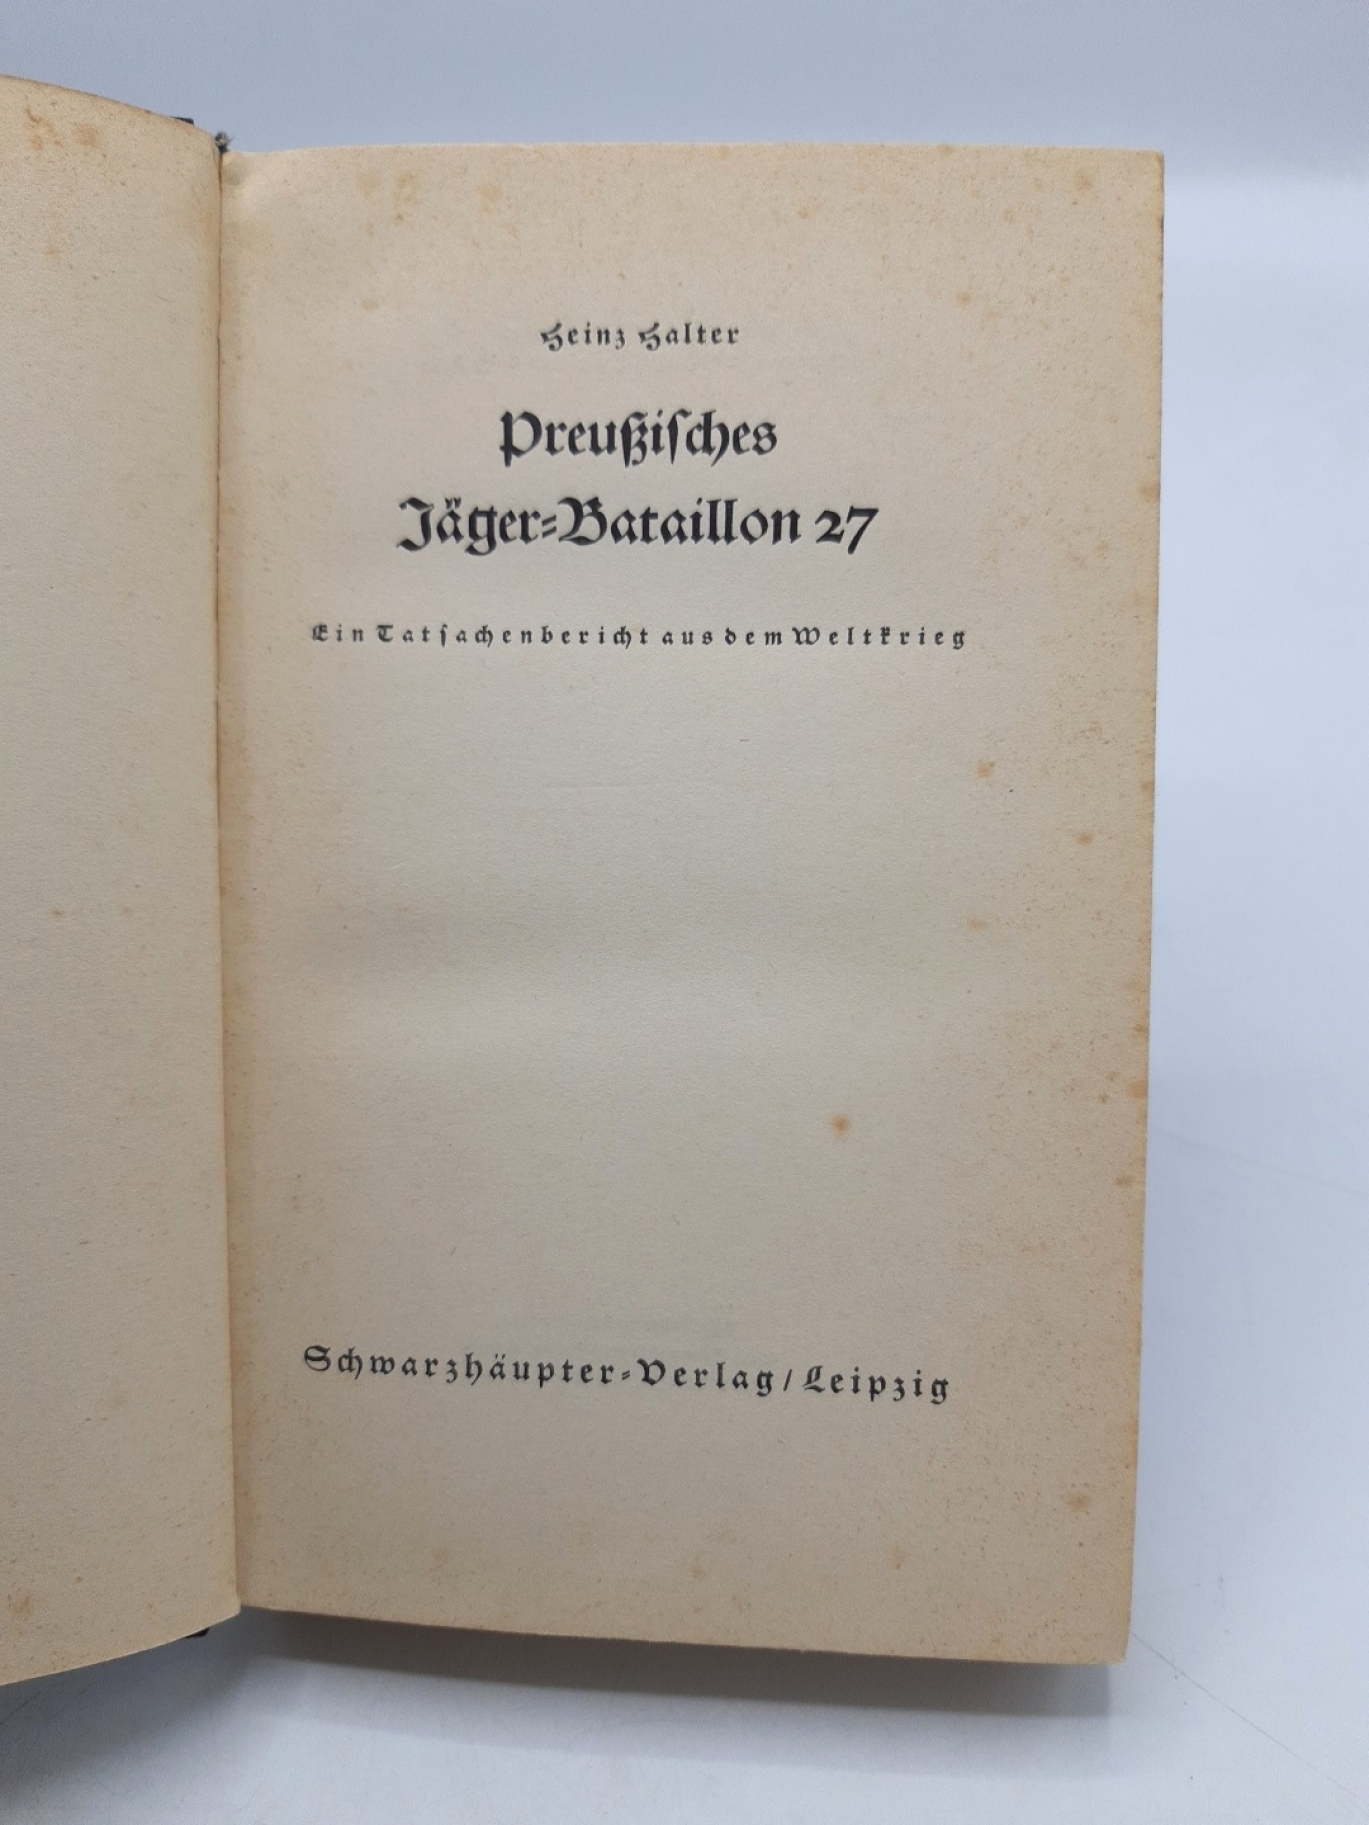 Halter, Heinz: Preußisches Jäger-Bataillon 27. Ein Tatsachenbericht aus dem Weltkrieg